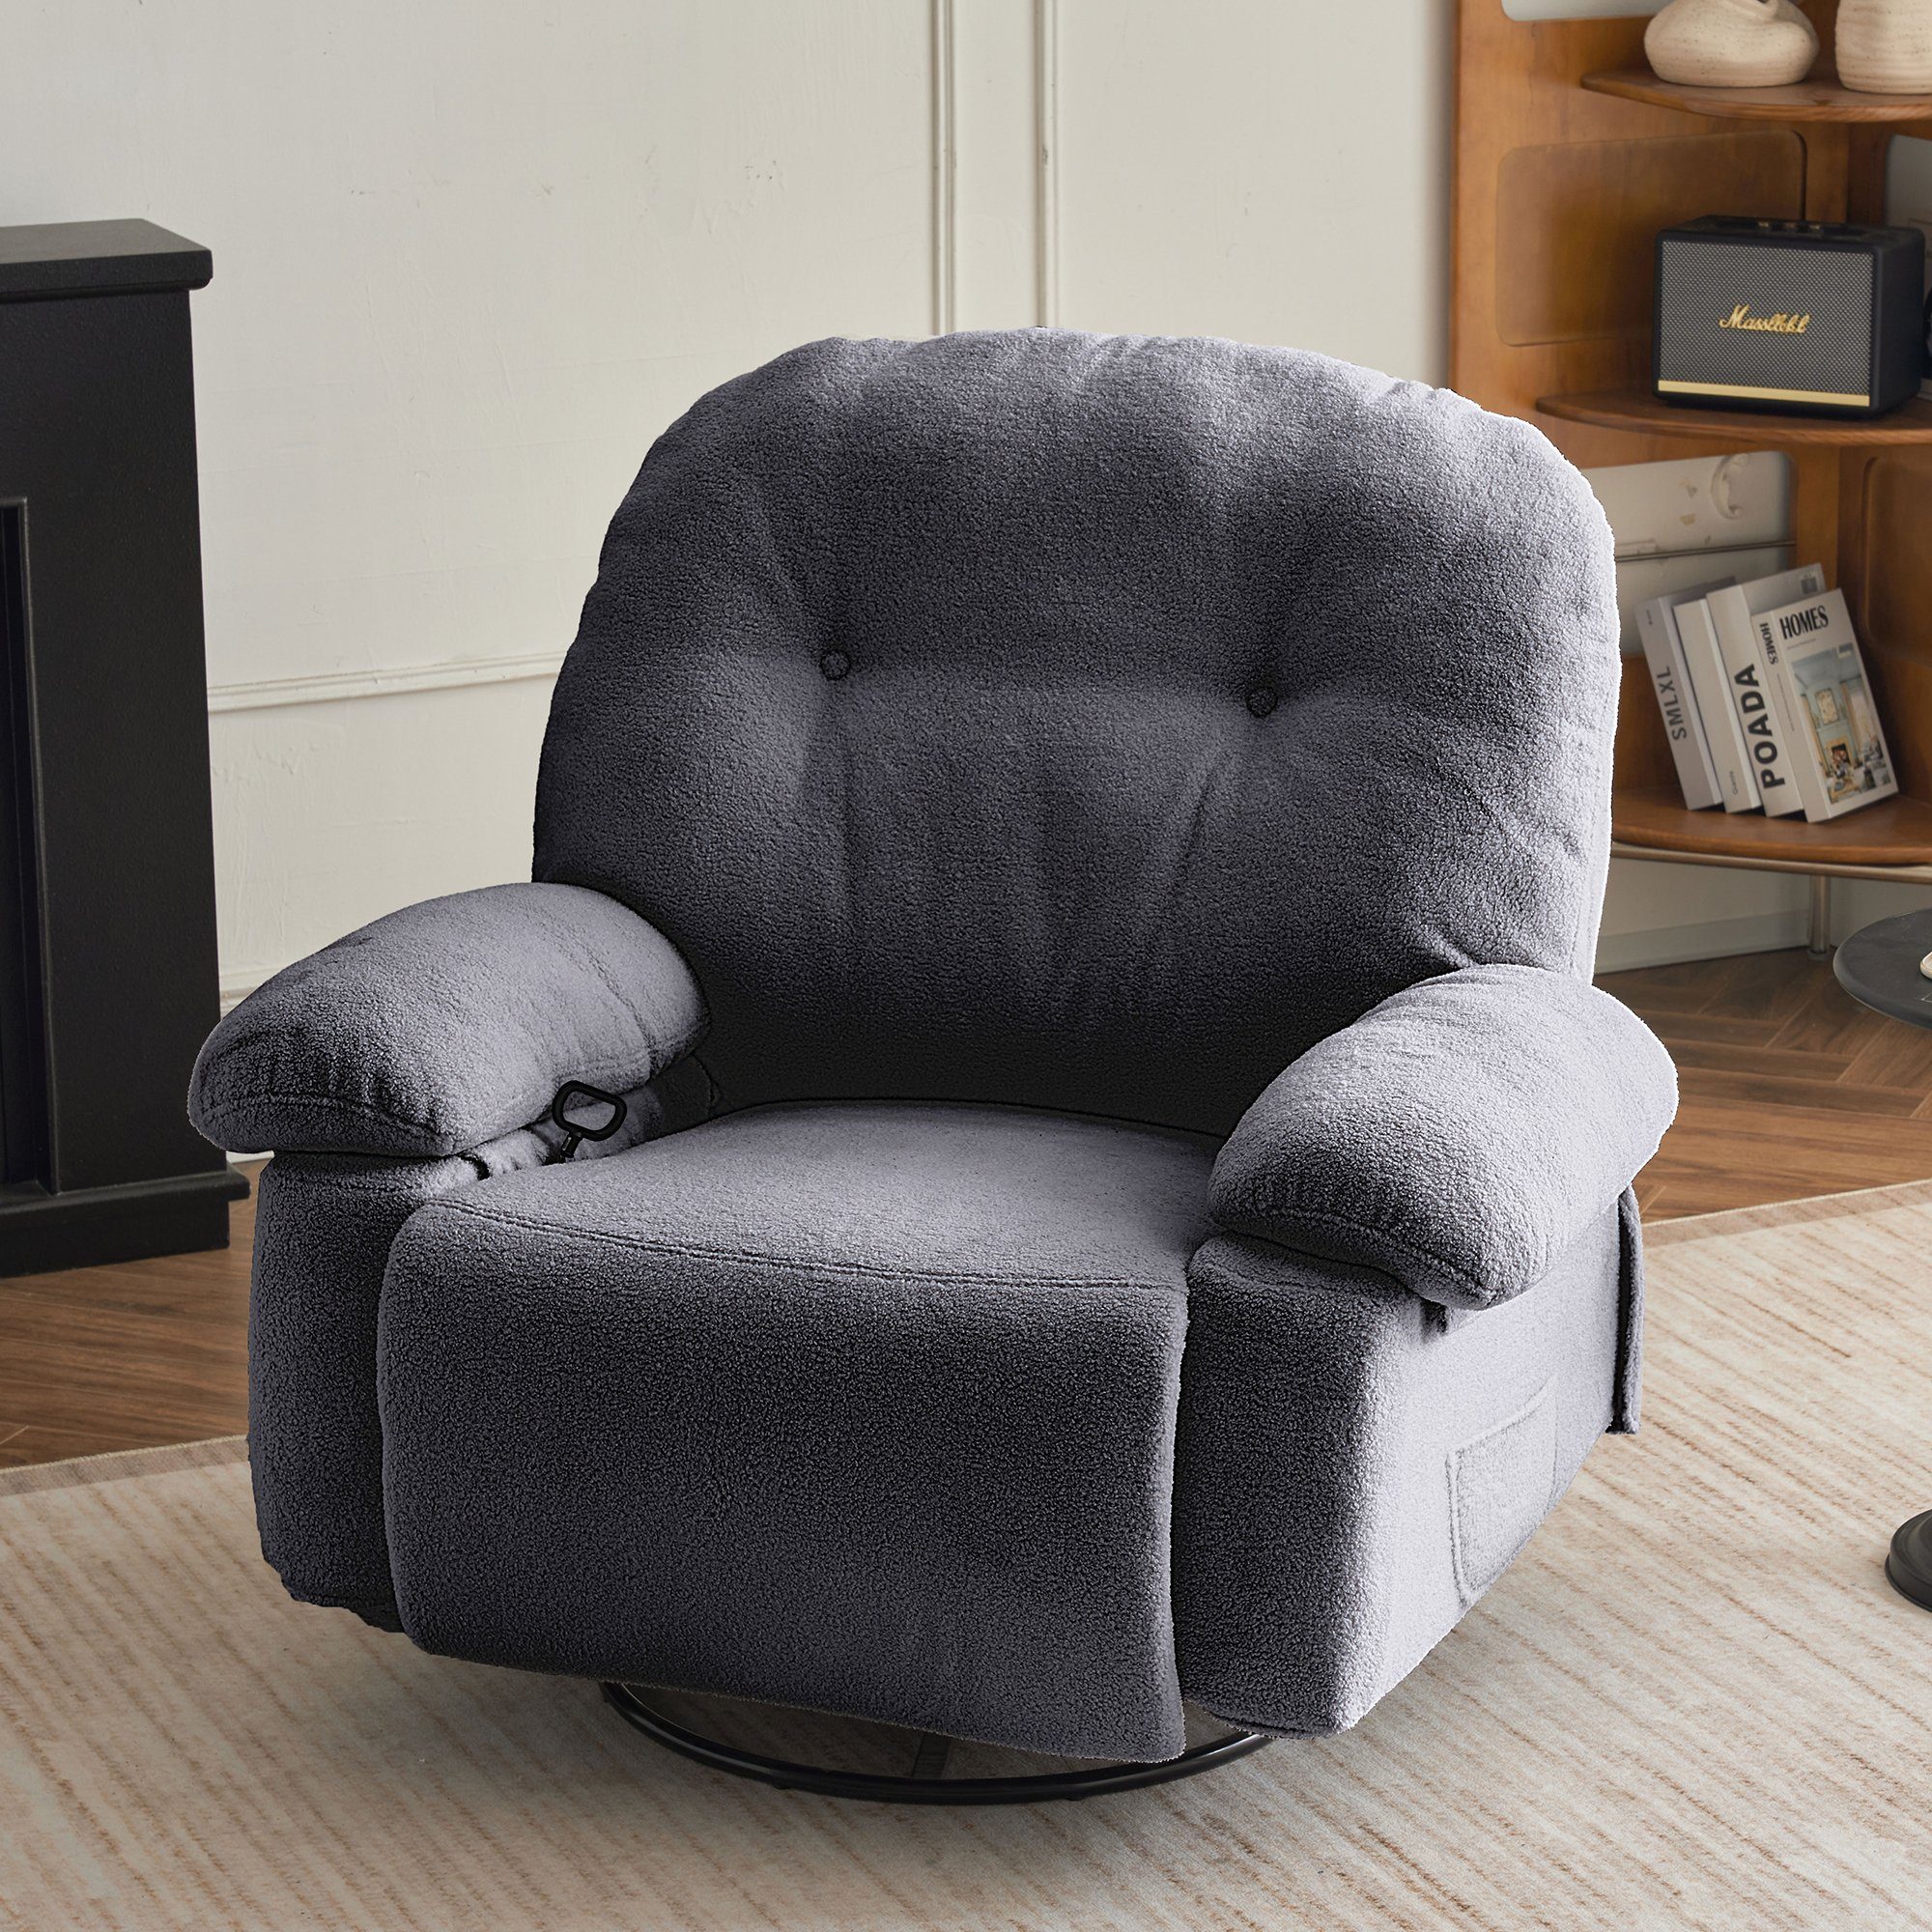 OKWISH TV-Sessel Relaxsessel mit Fernbedienung (Wohnzimmersessel, Heimkino-Loungesesse), mit 360° Drehfunktion und Timer Grau